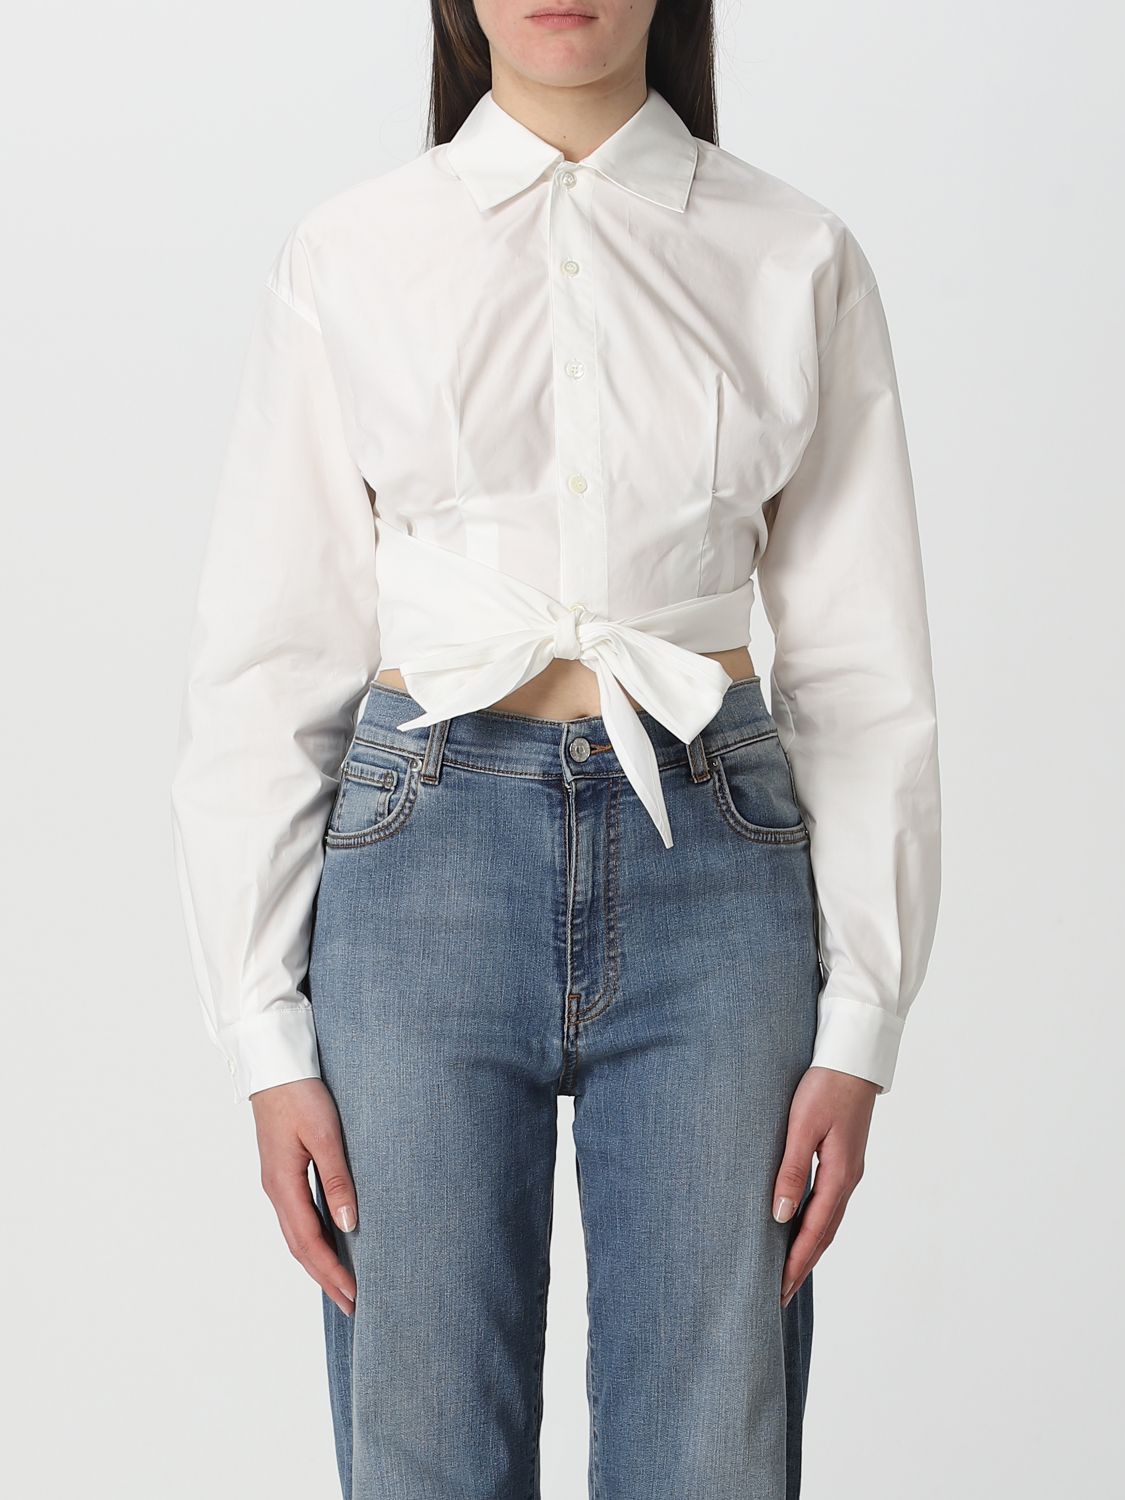 Shop Ami Alexandre Mattiussi Shirt Ami Paris Woman Color White